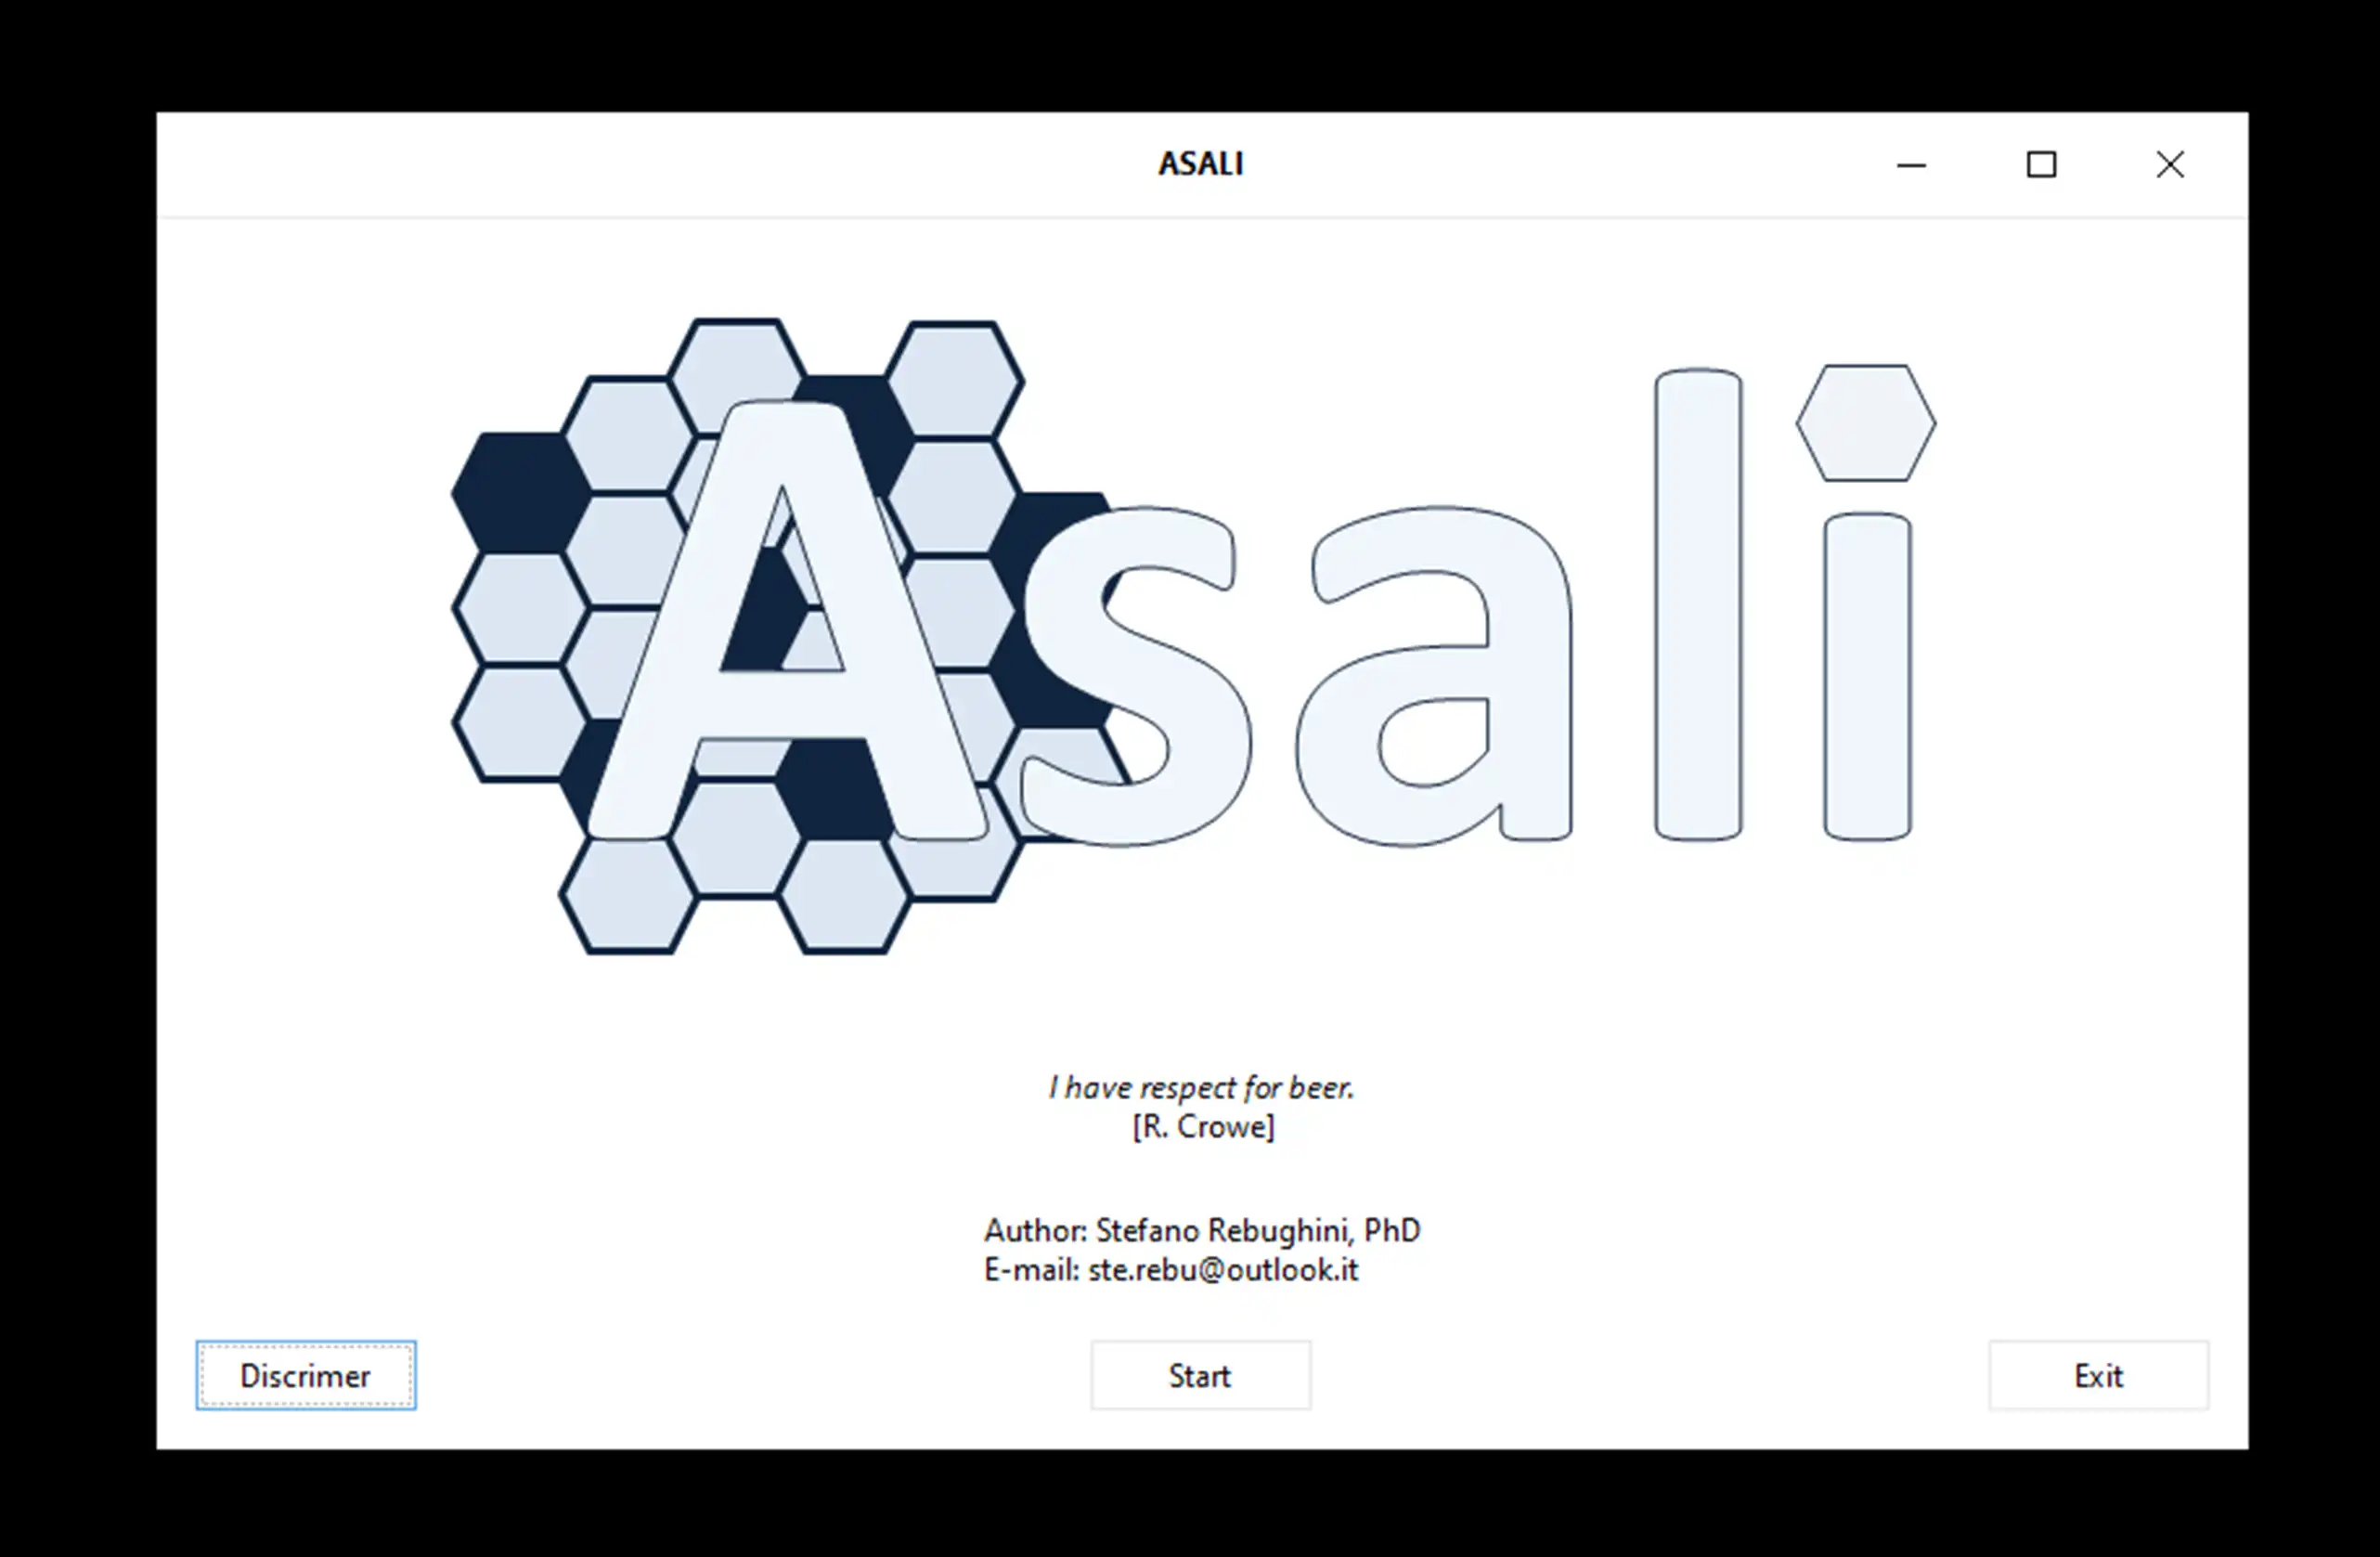 Download web tool or web app ASALI